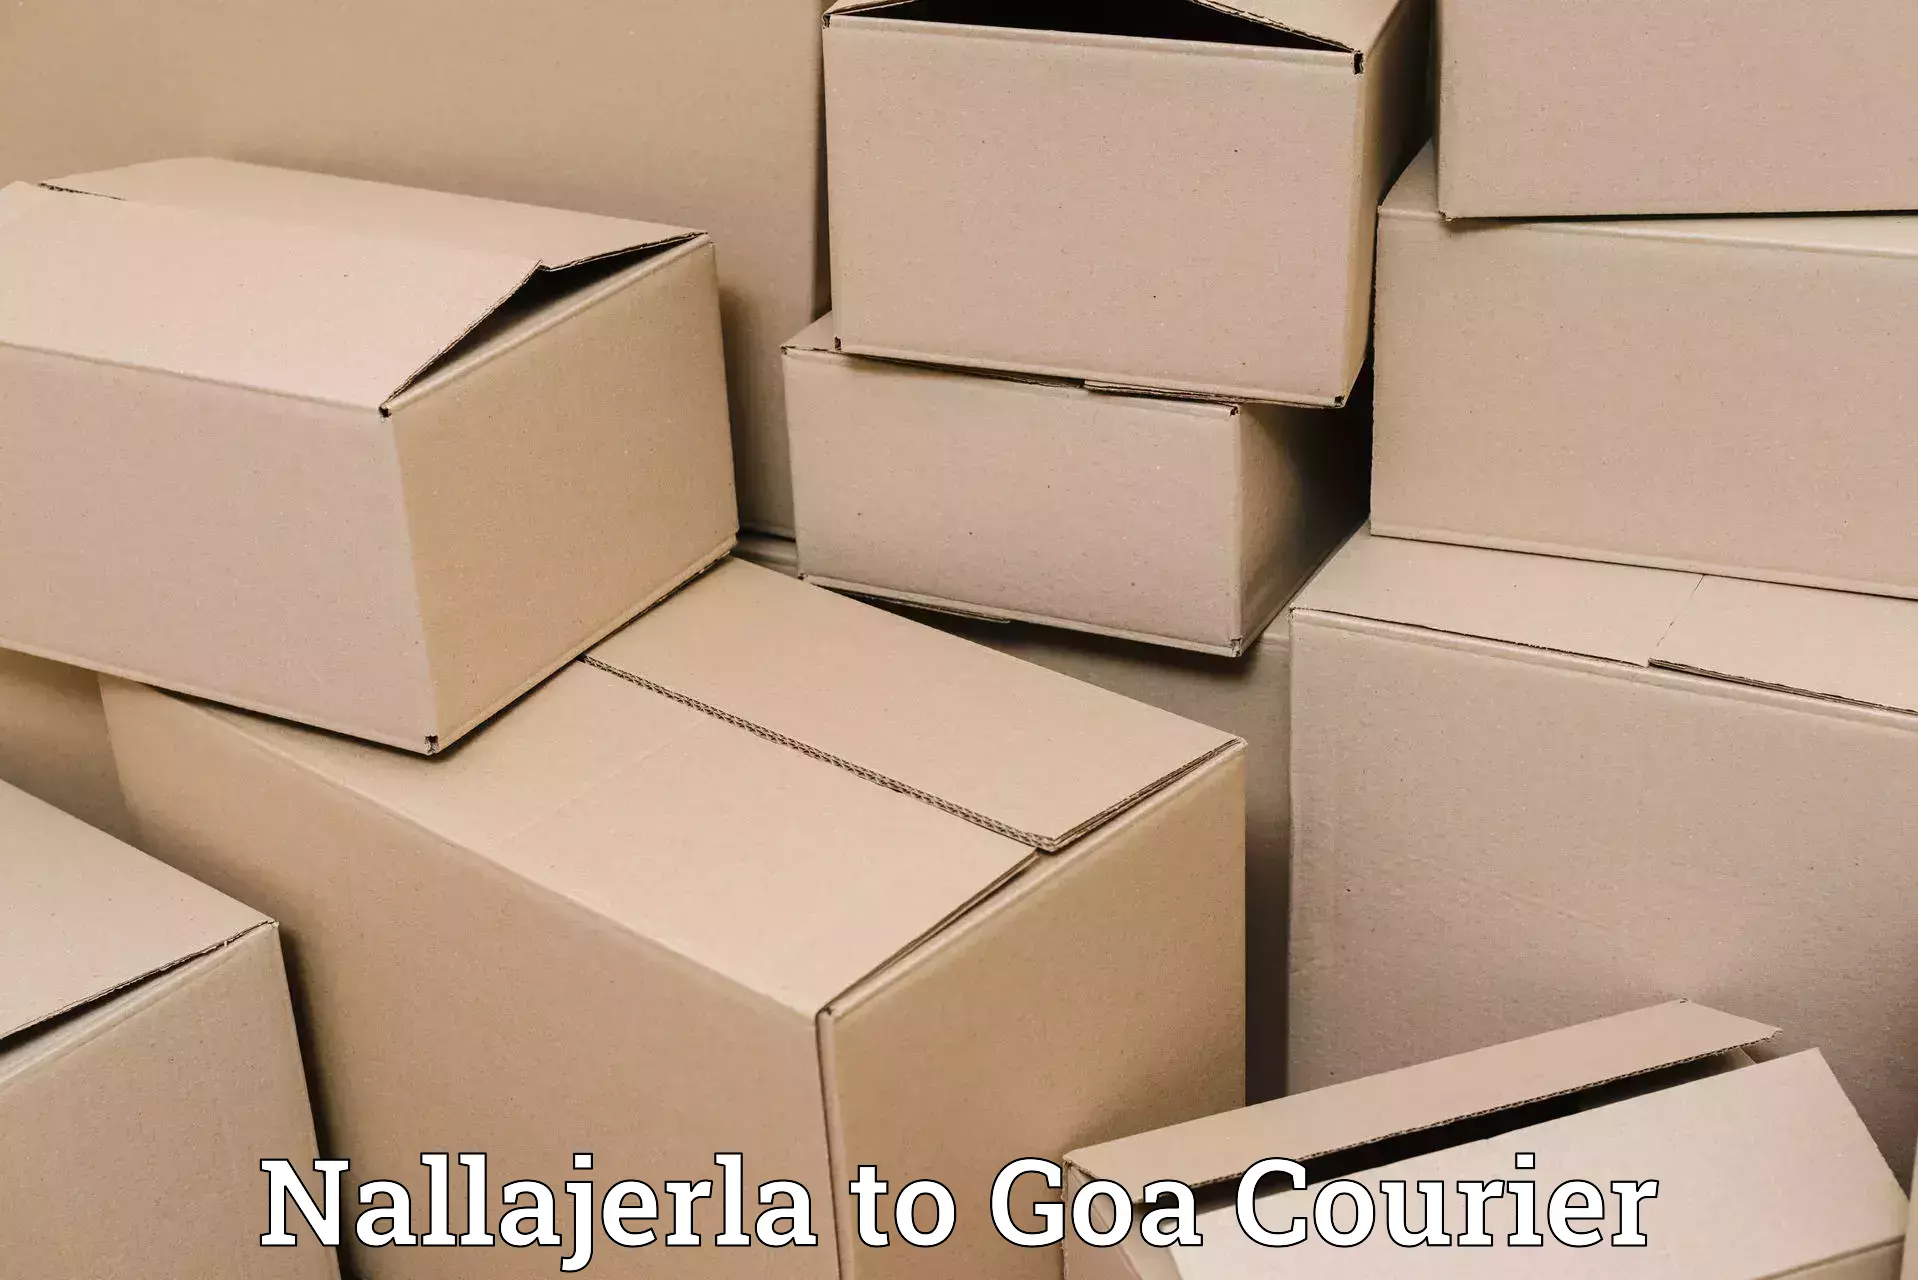 Efficient parcel service Nallajerla to Canacona